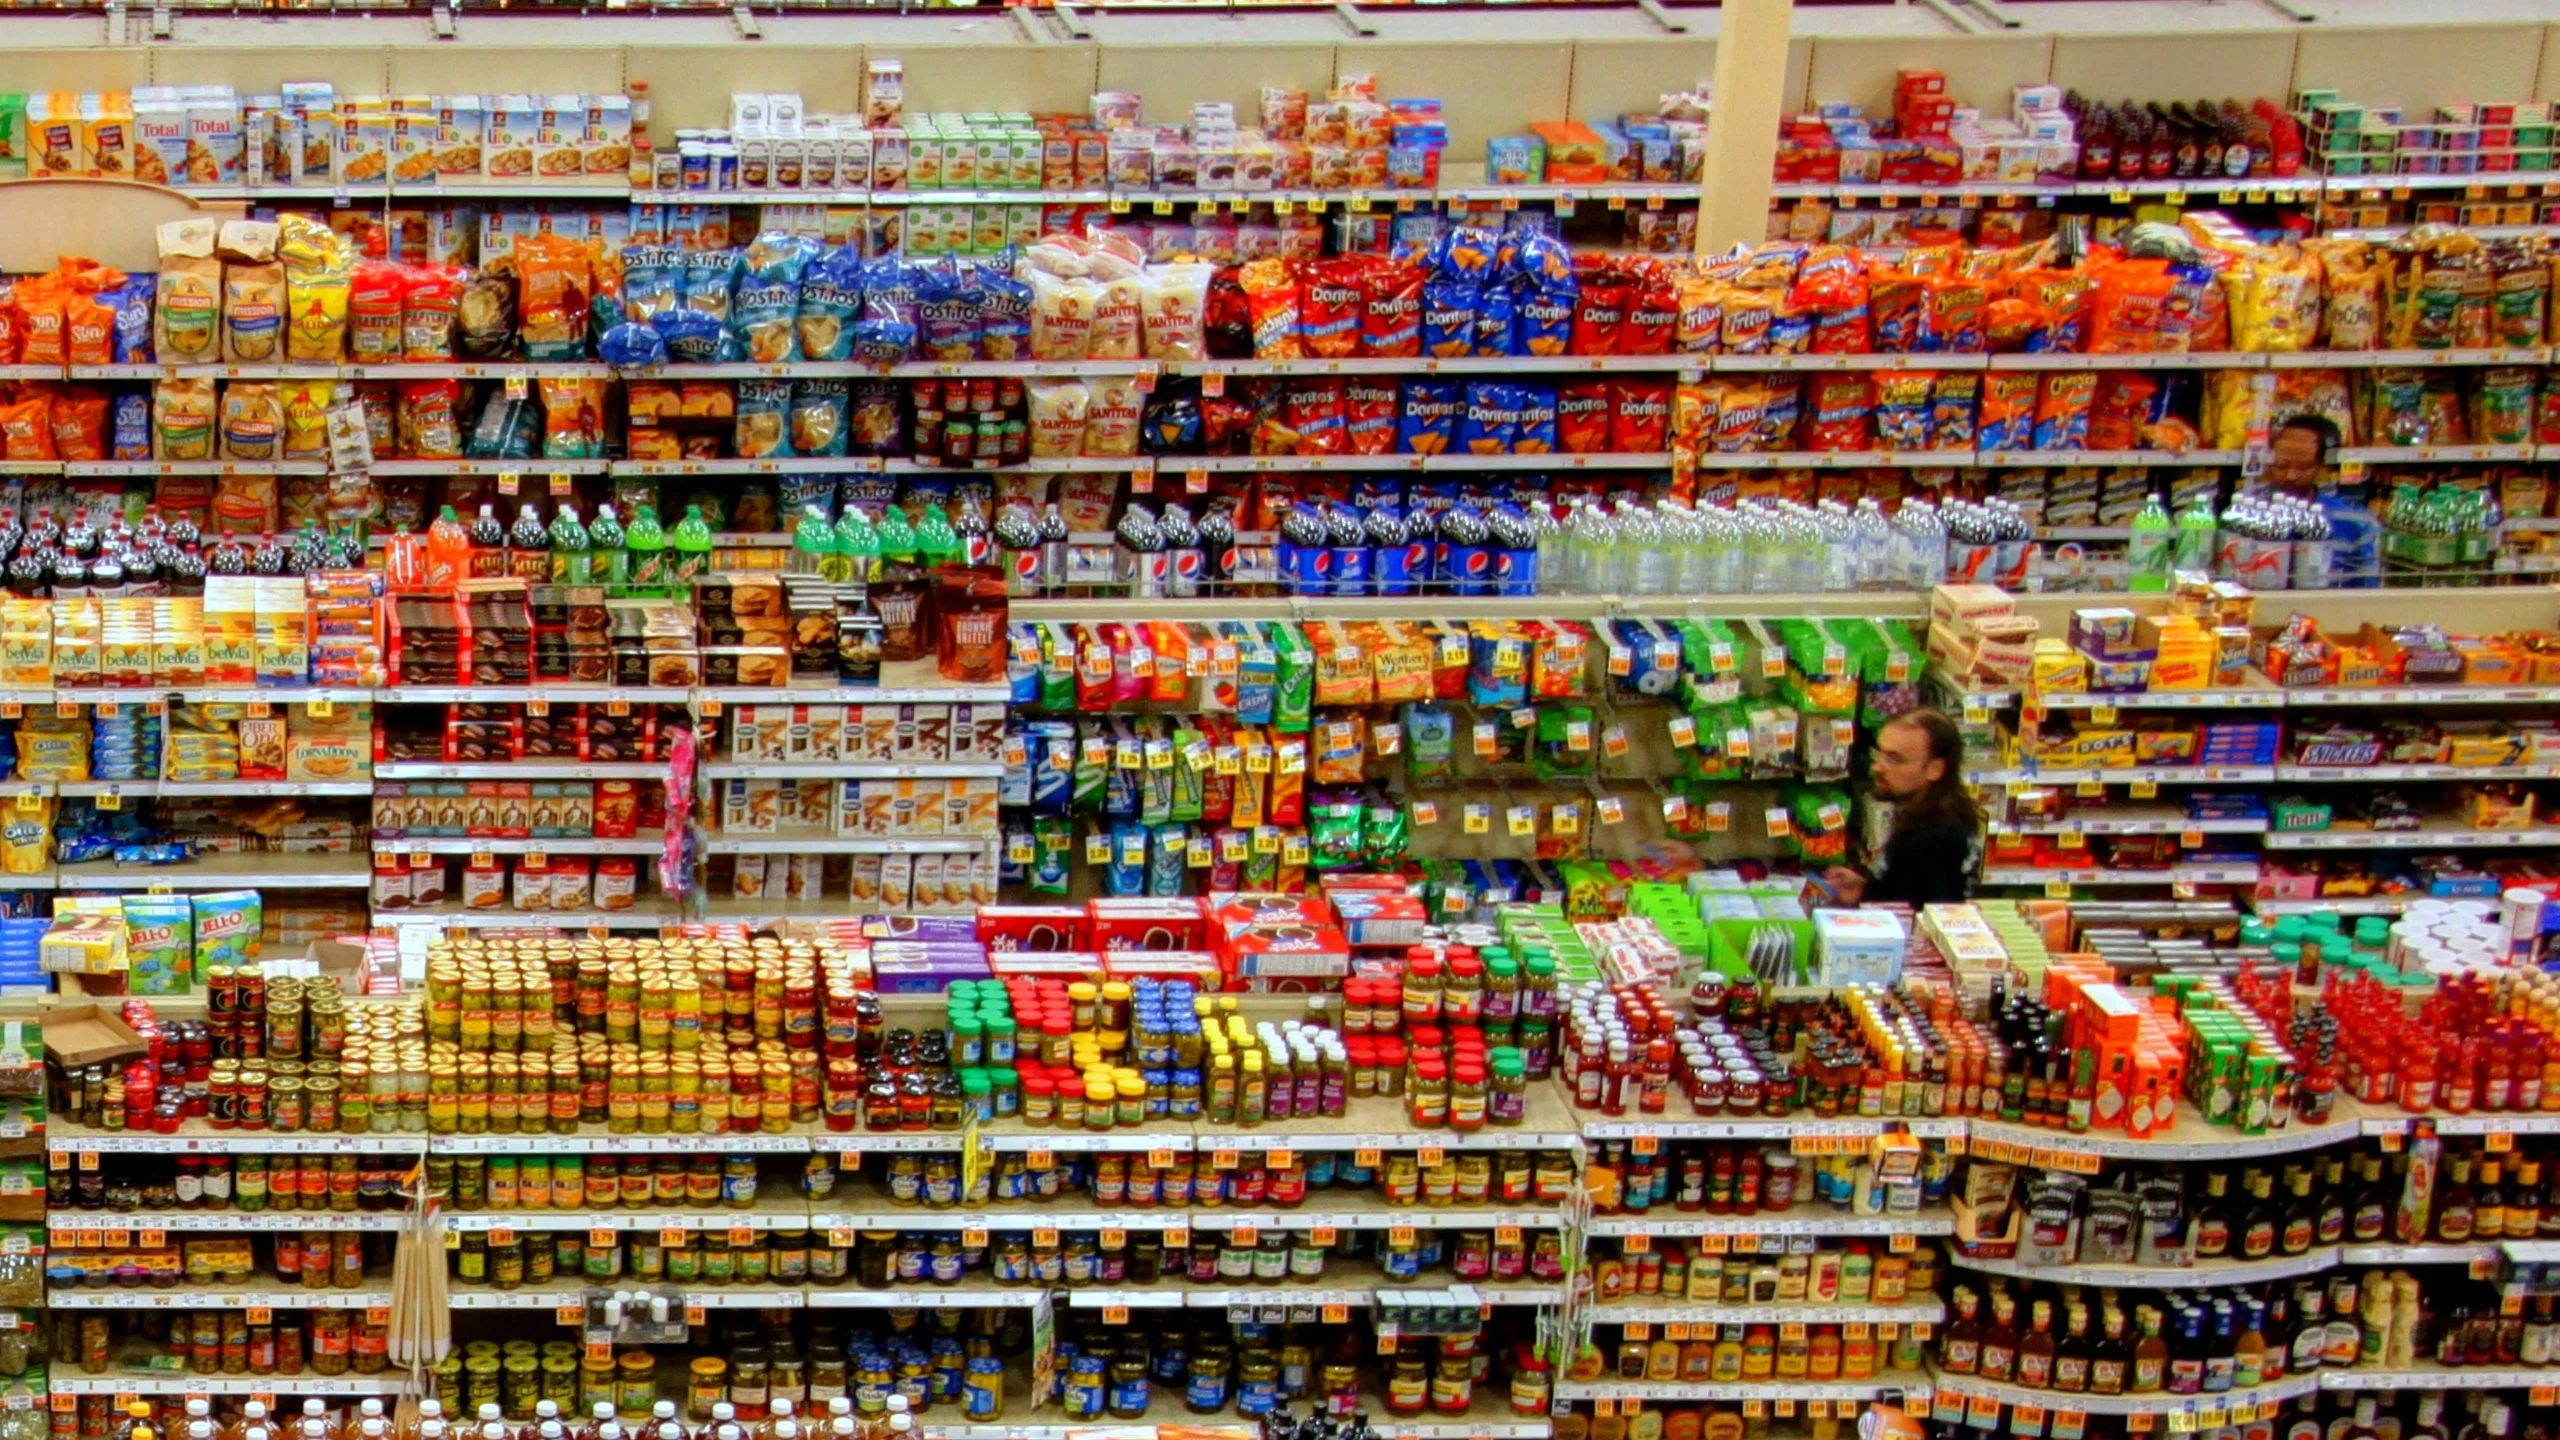 Amazon Fresh: ¿cómo es comprar en el supermercado del futuro?